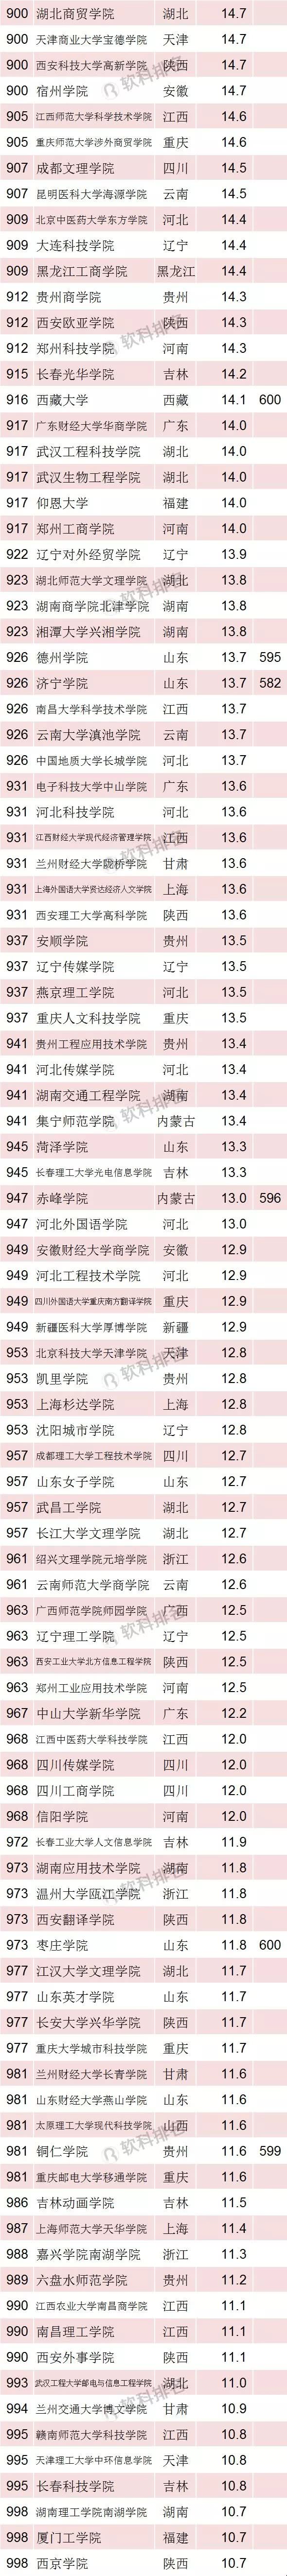 2018中国最好大学排名